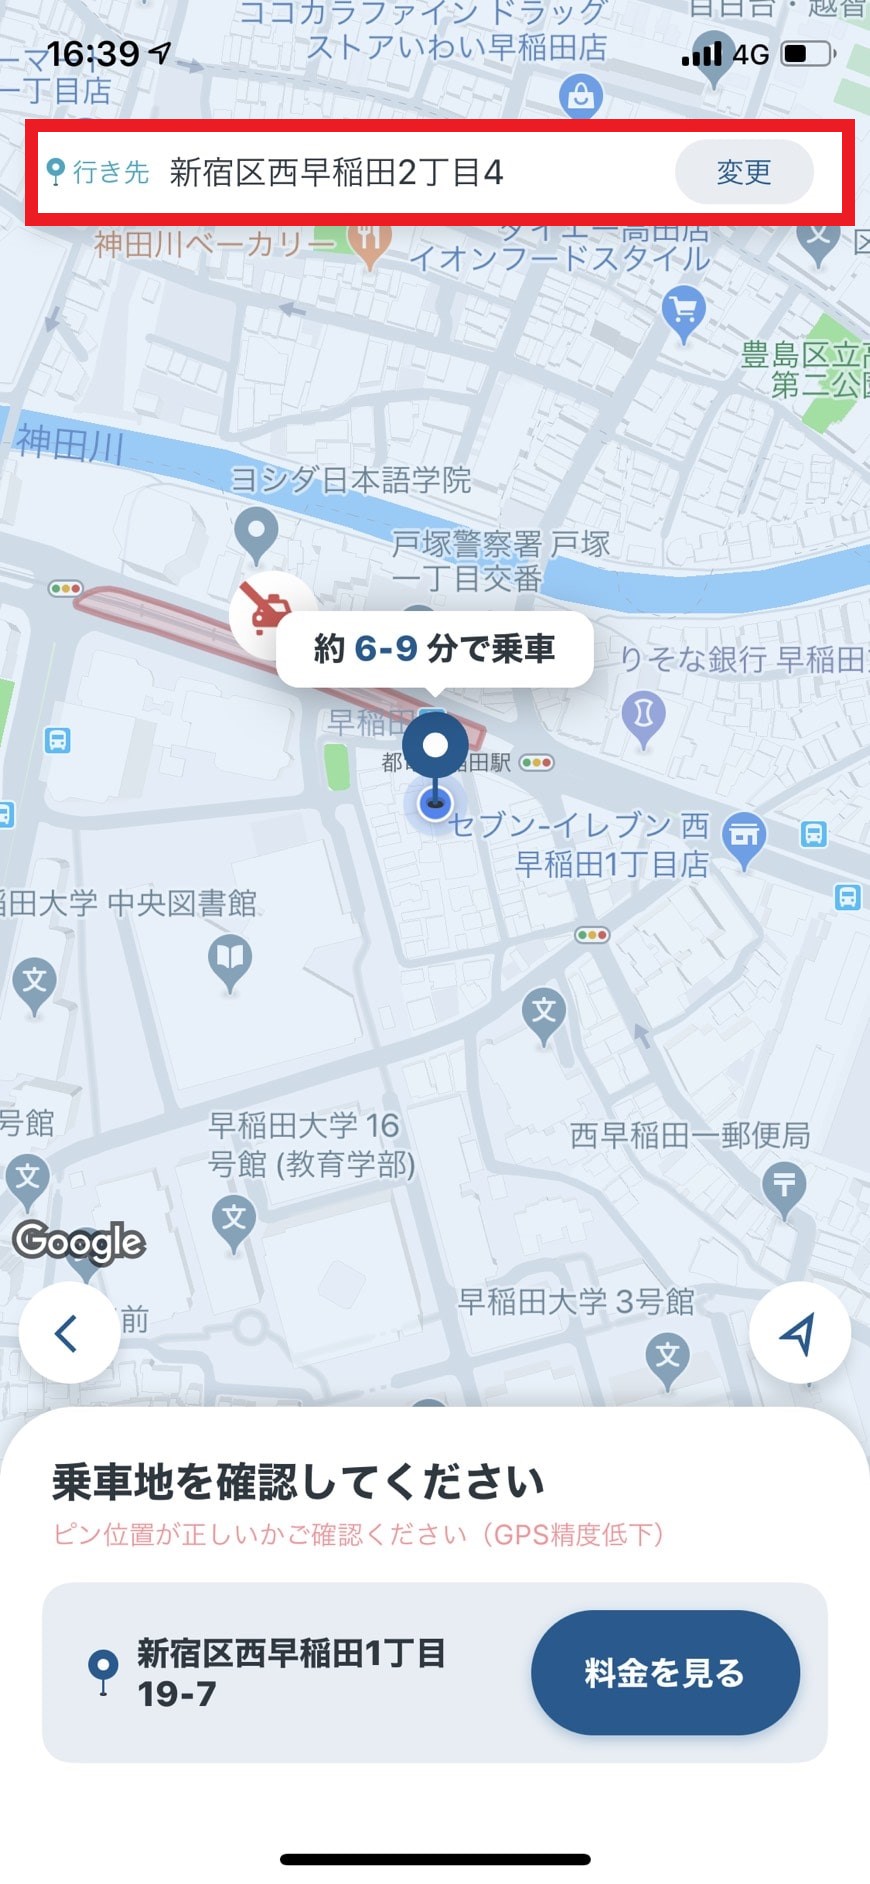 MOVタクシーアプリで乗車地を確認